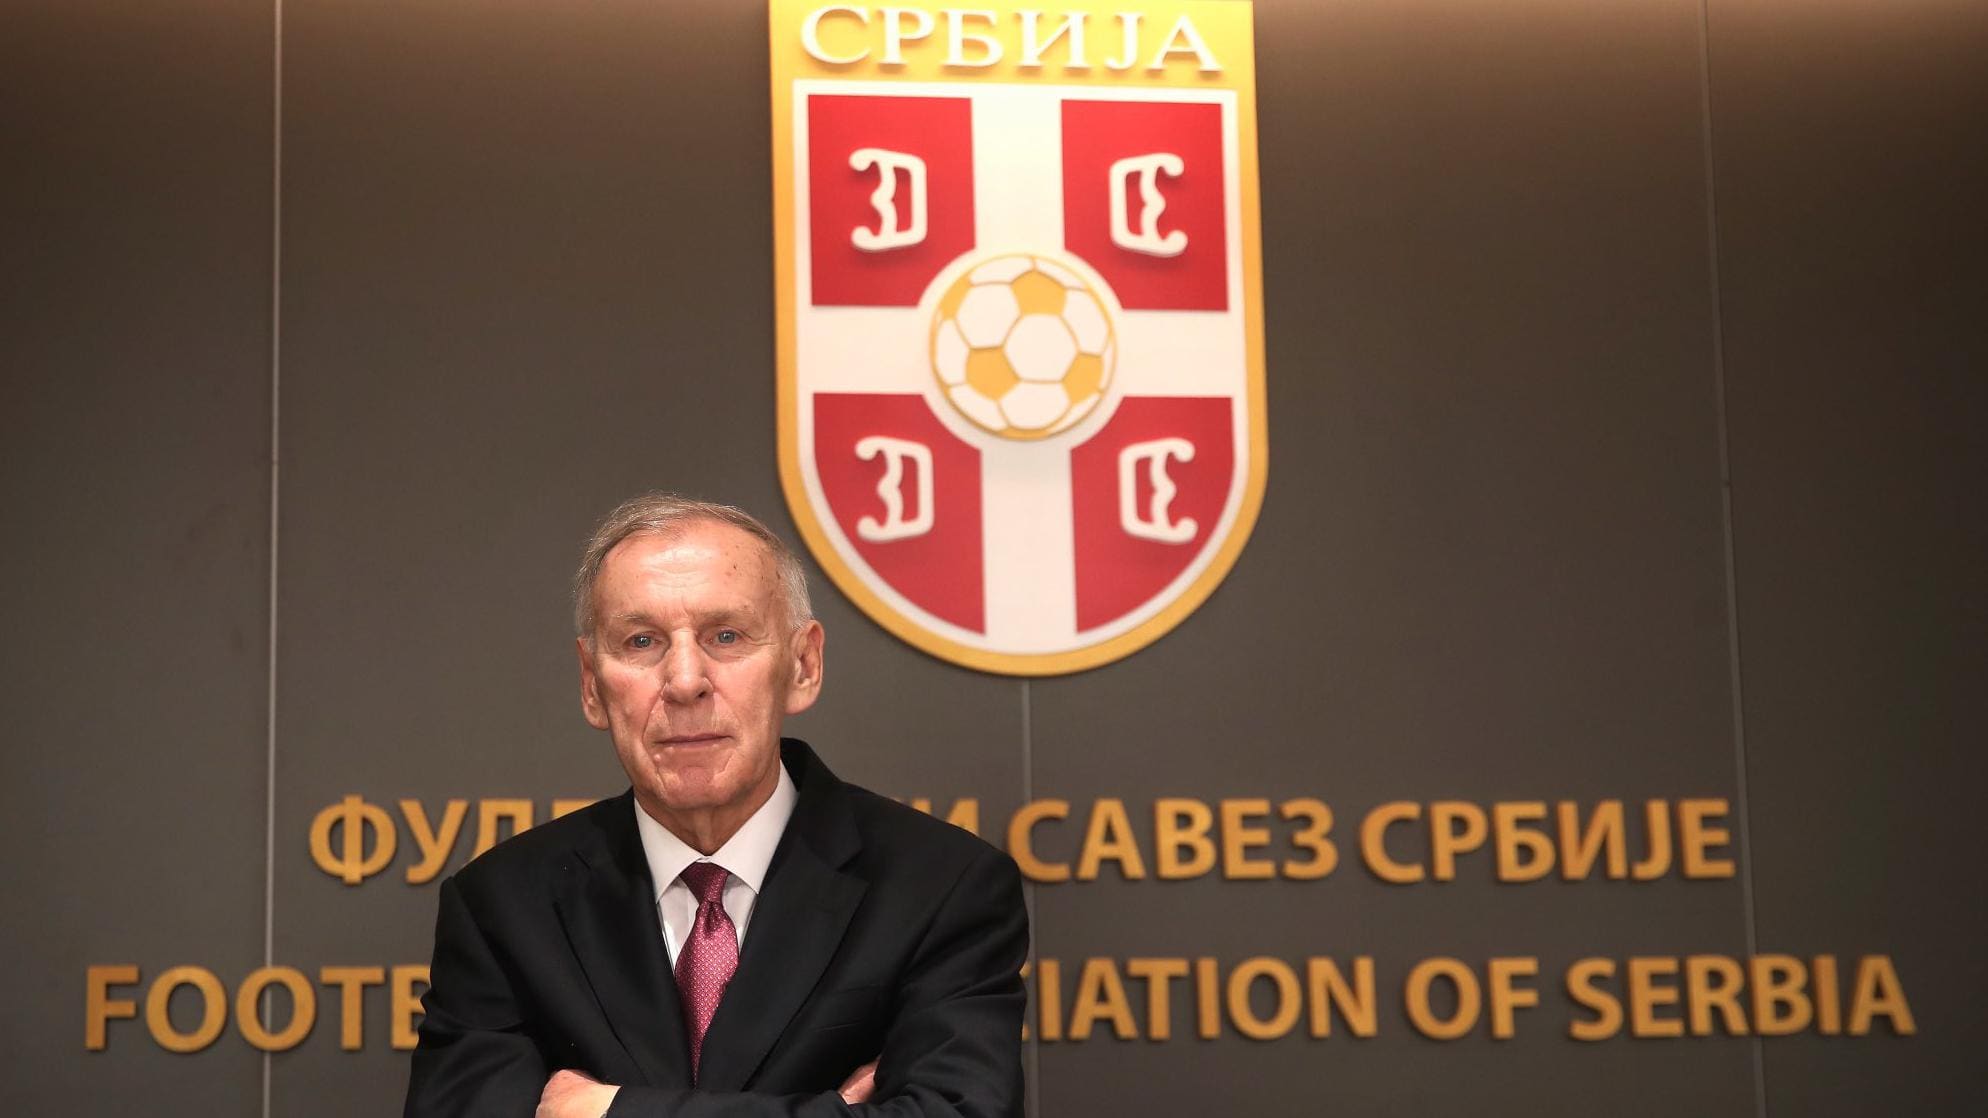 Фудбалски савез Србије изабран за новог председника у Џајићу |  Унутар УЕФА